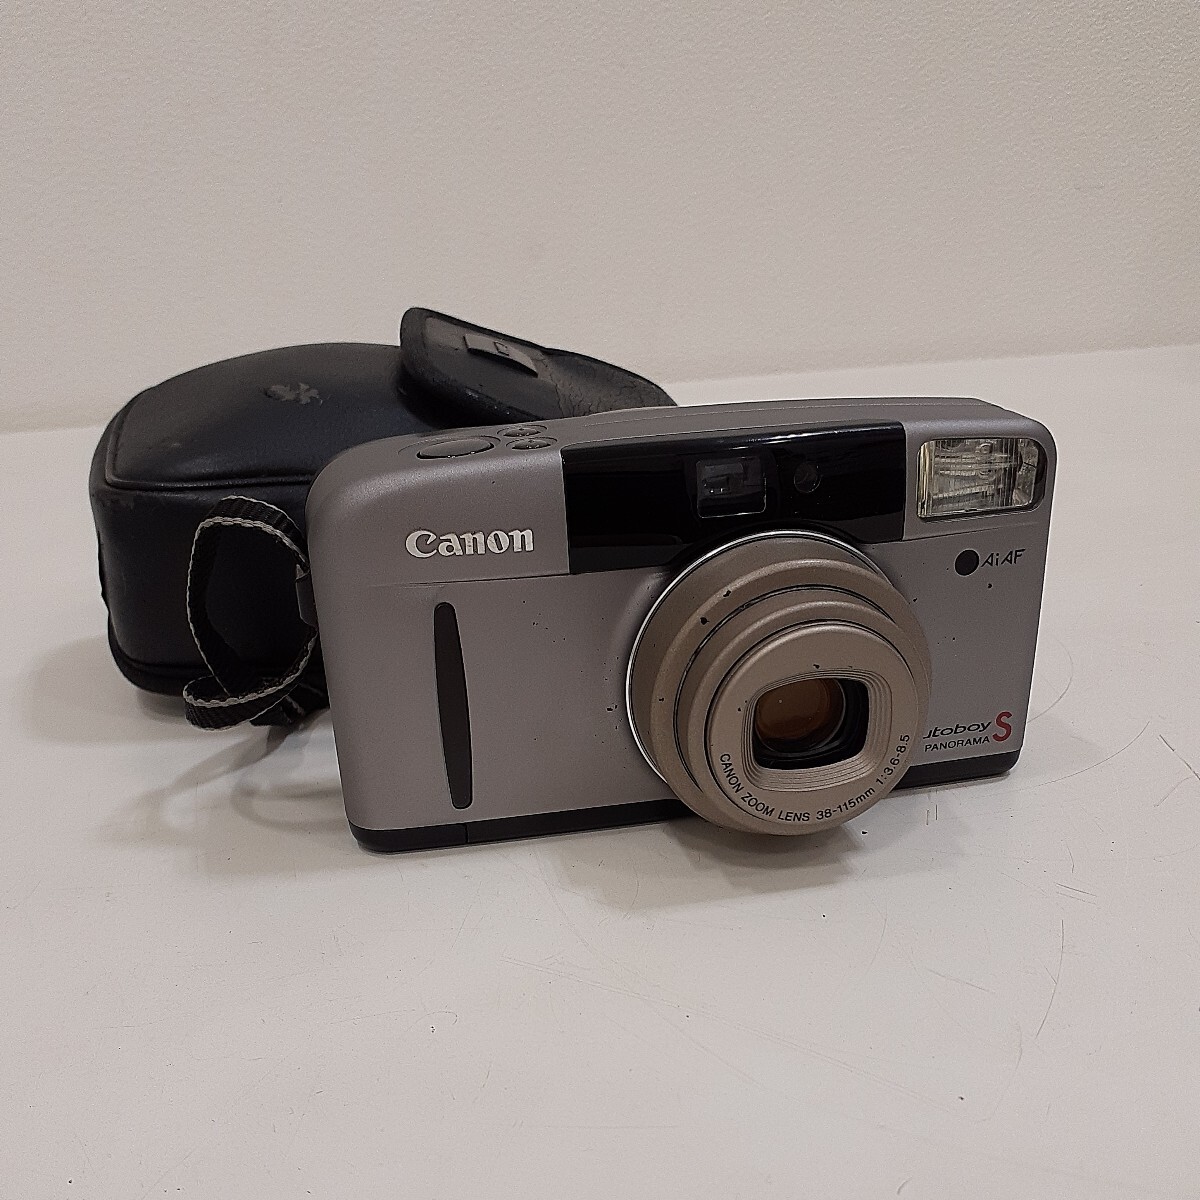 Canon キャノン Autoboy S PANORAMA オートボーイ 38-115mm F:3.6-8.5 コンパクトフィルムカメラ 通電確認済み_画像1